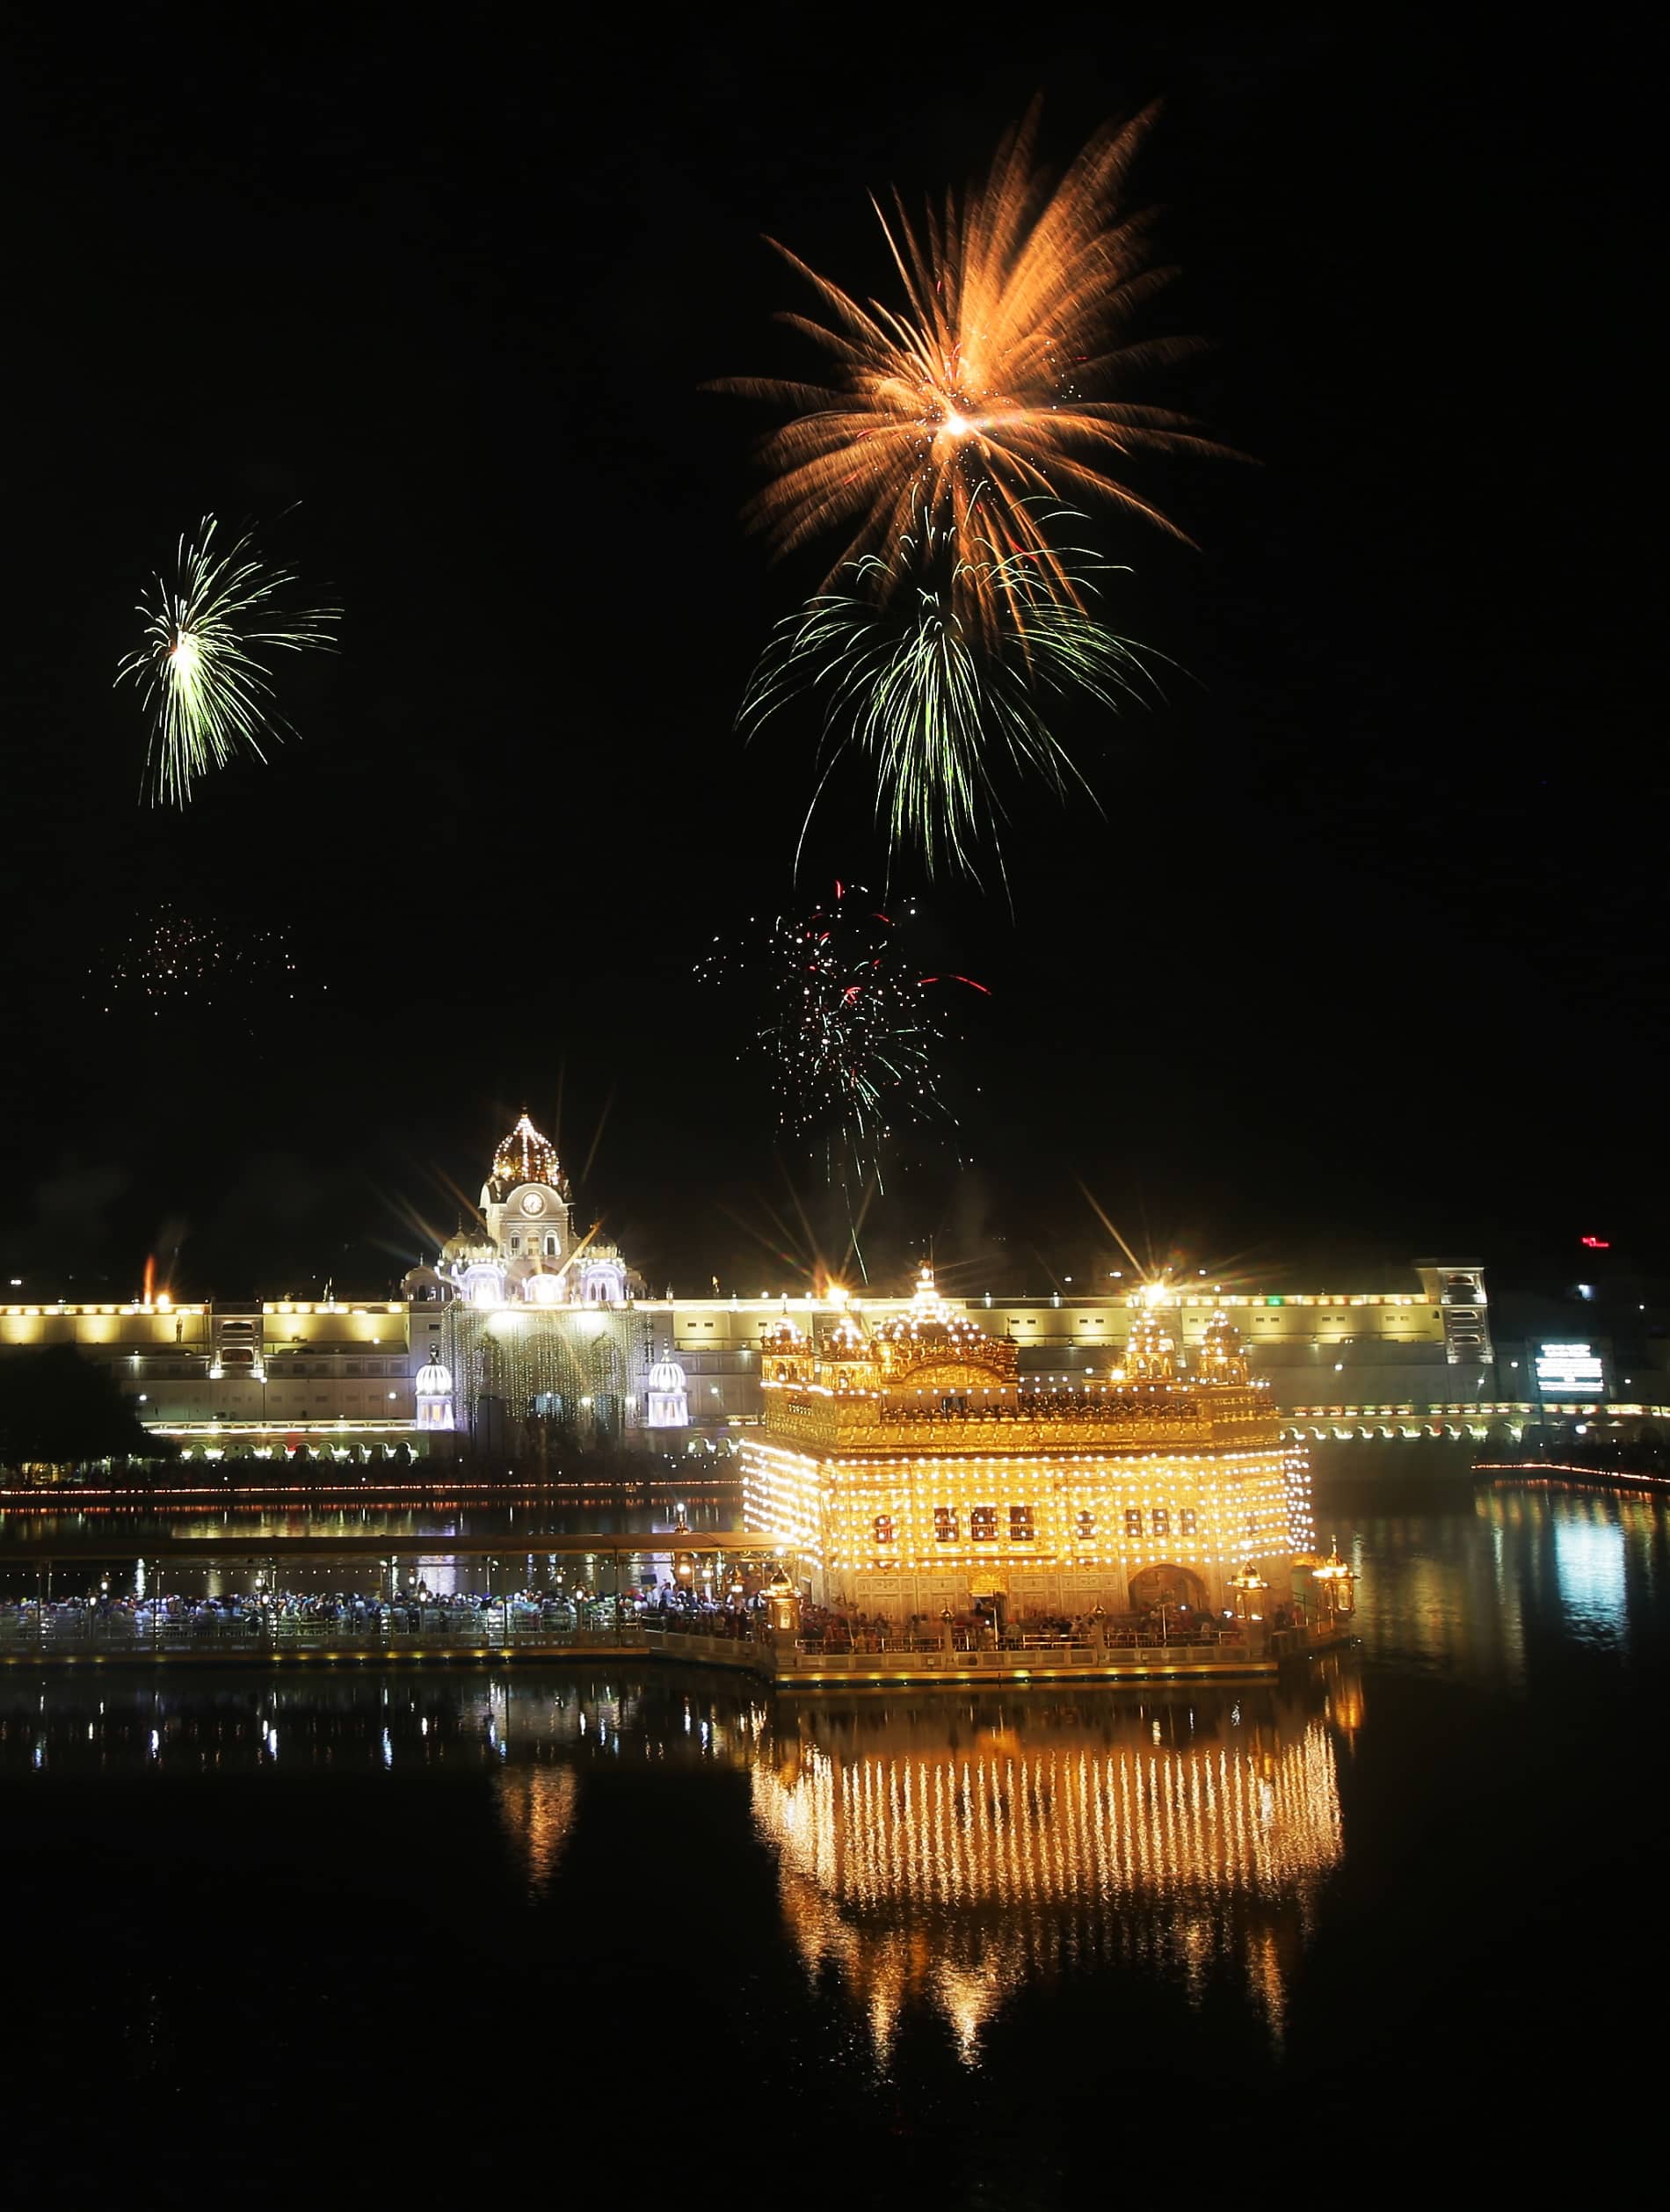 Golden temple illuminated  on the occasion of Gurunanak Jayanti